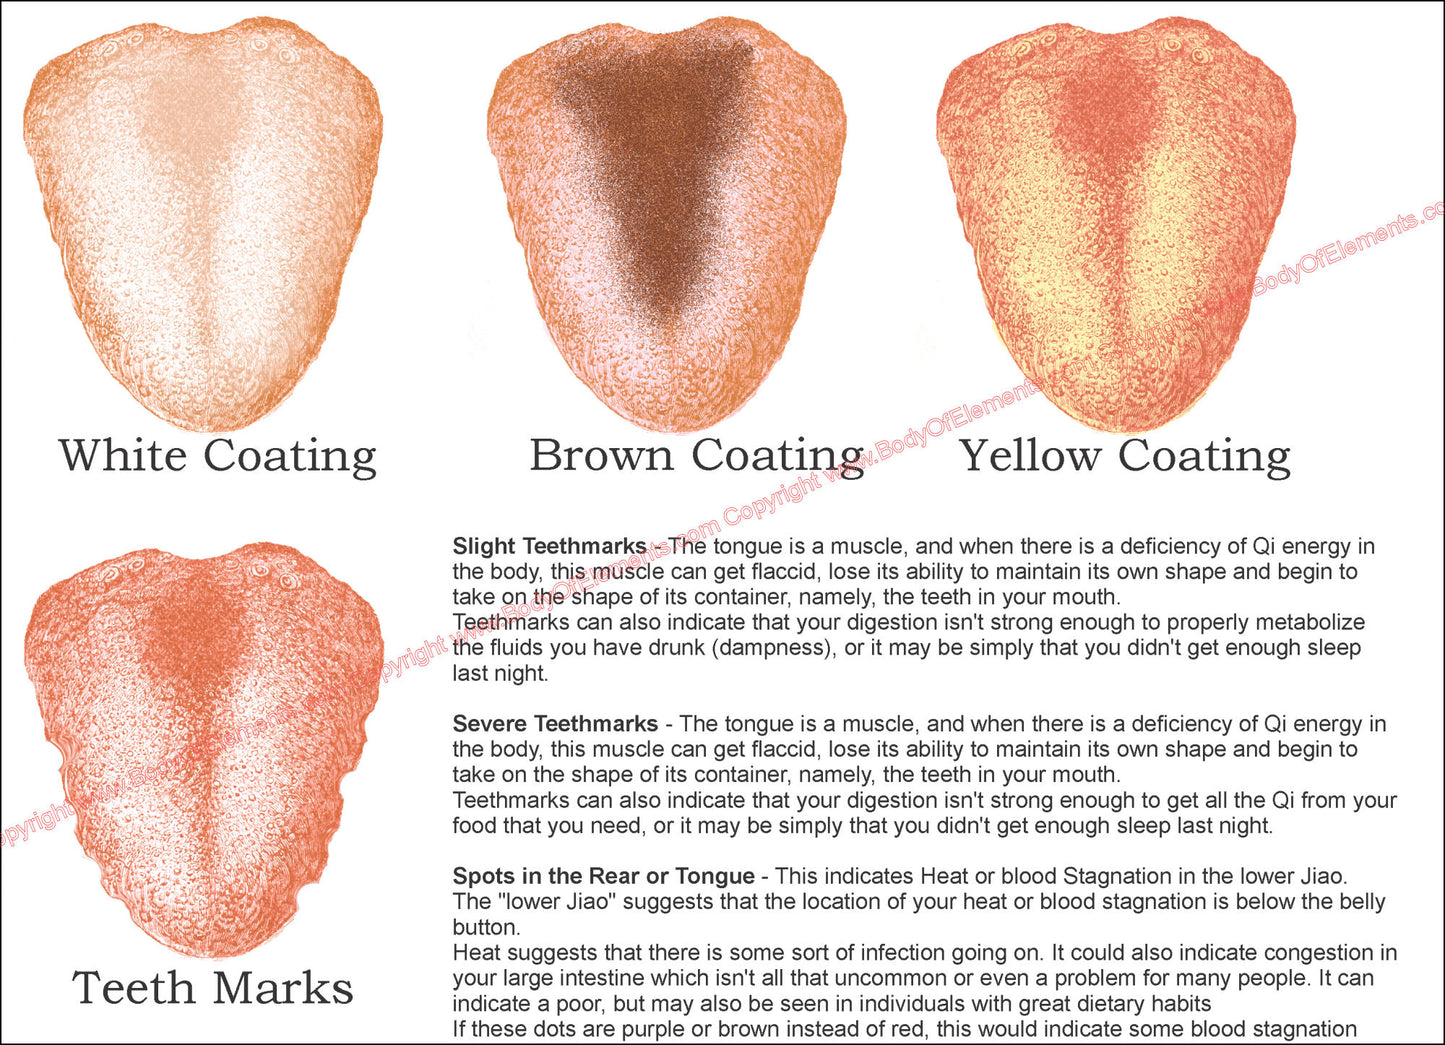 Tongue diagnosis coating descriptions